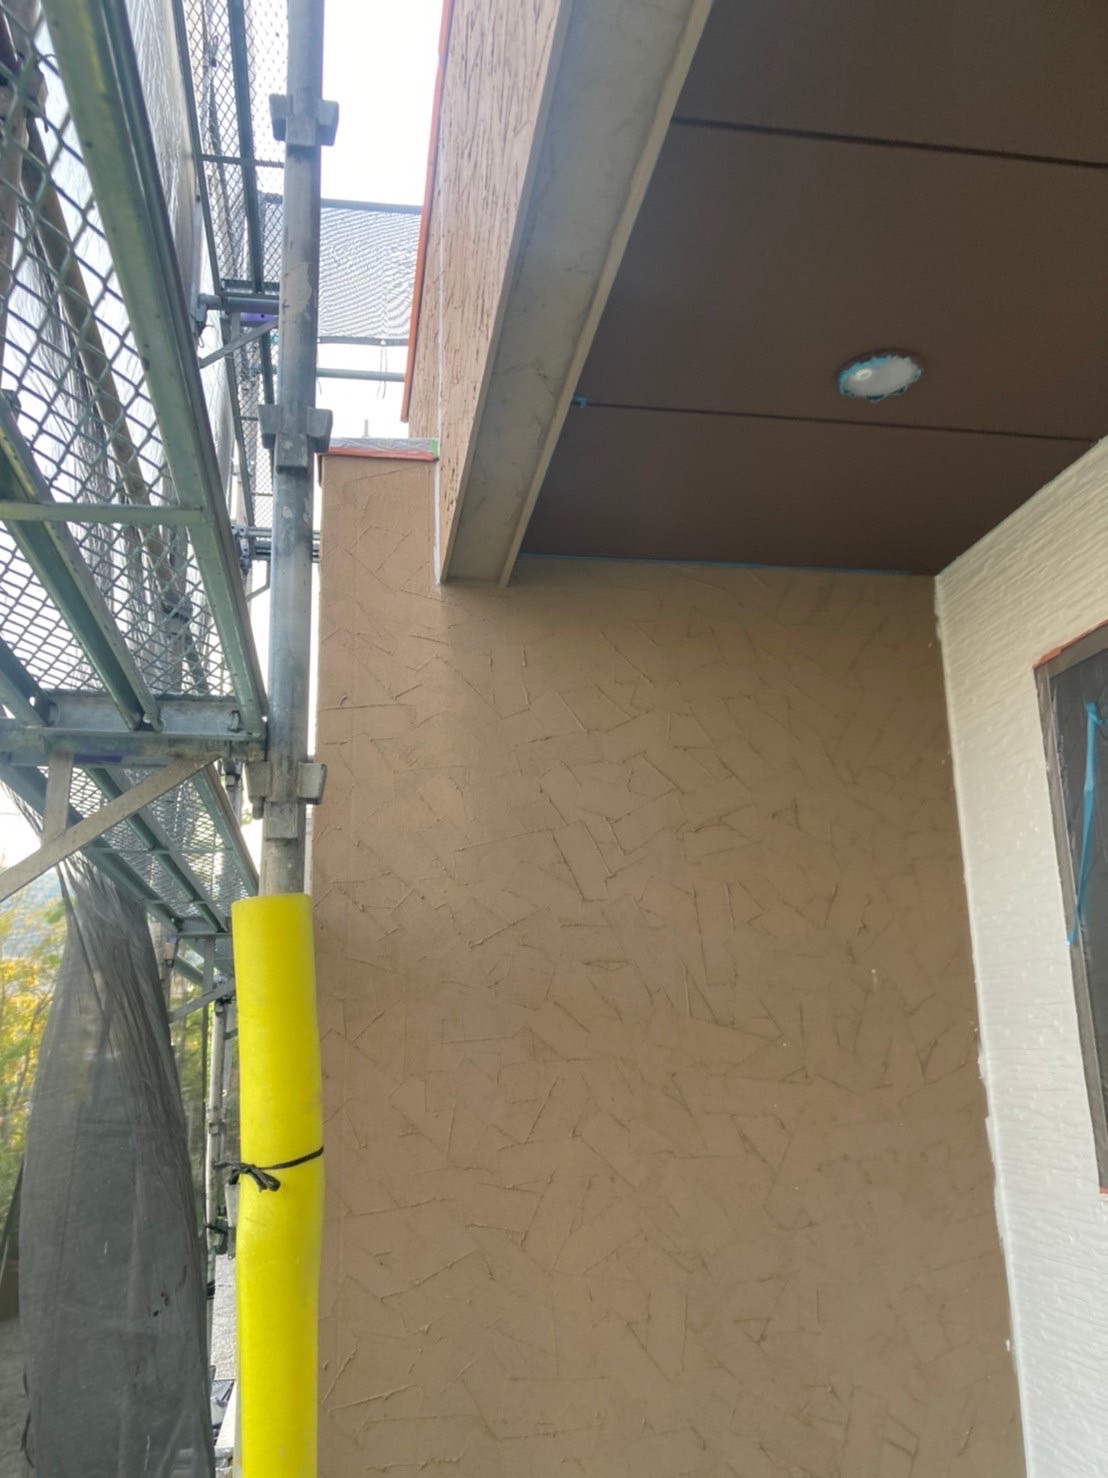 福岡県福岡市西区(No.38) 外壁塗装の下塗り(ジョリパット施工部分)完了 写真6